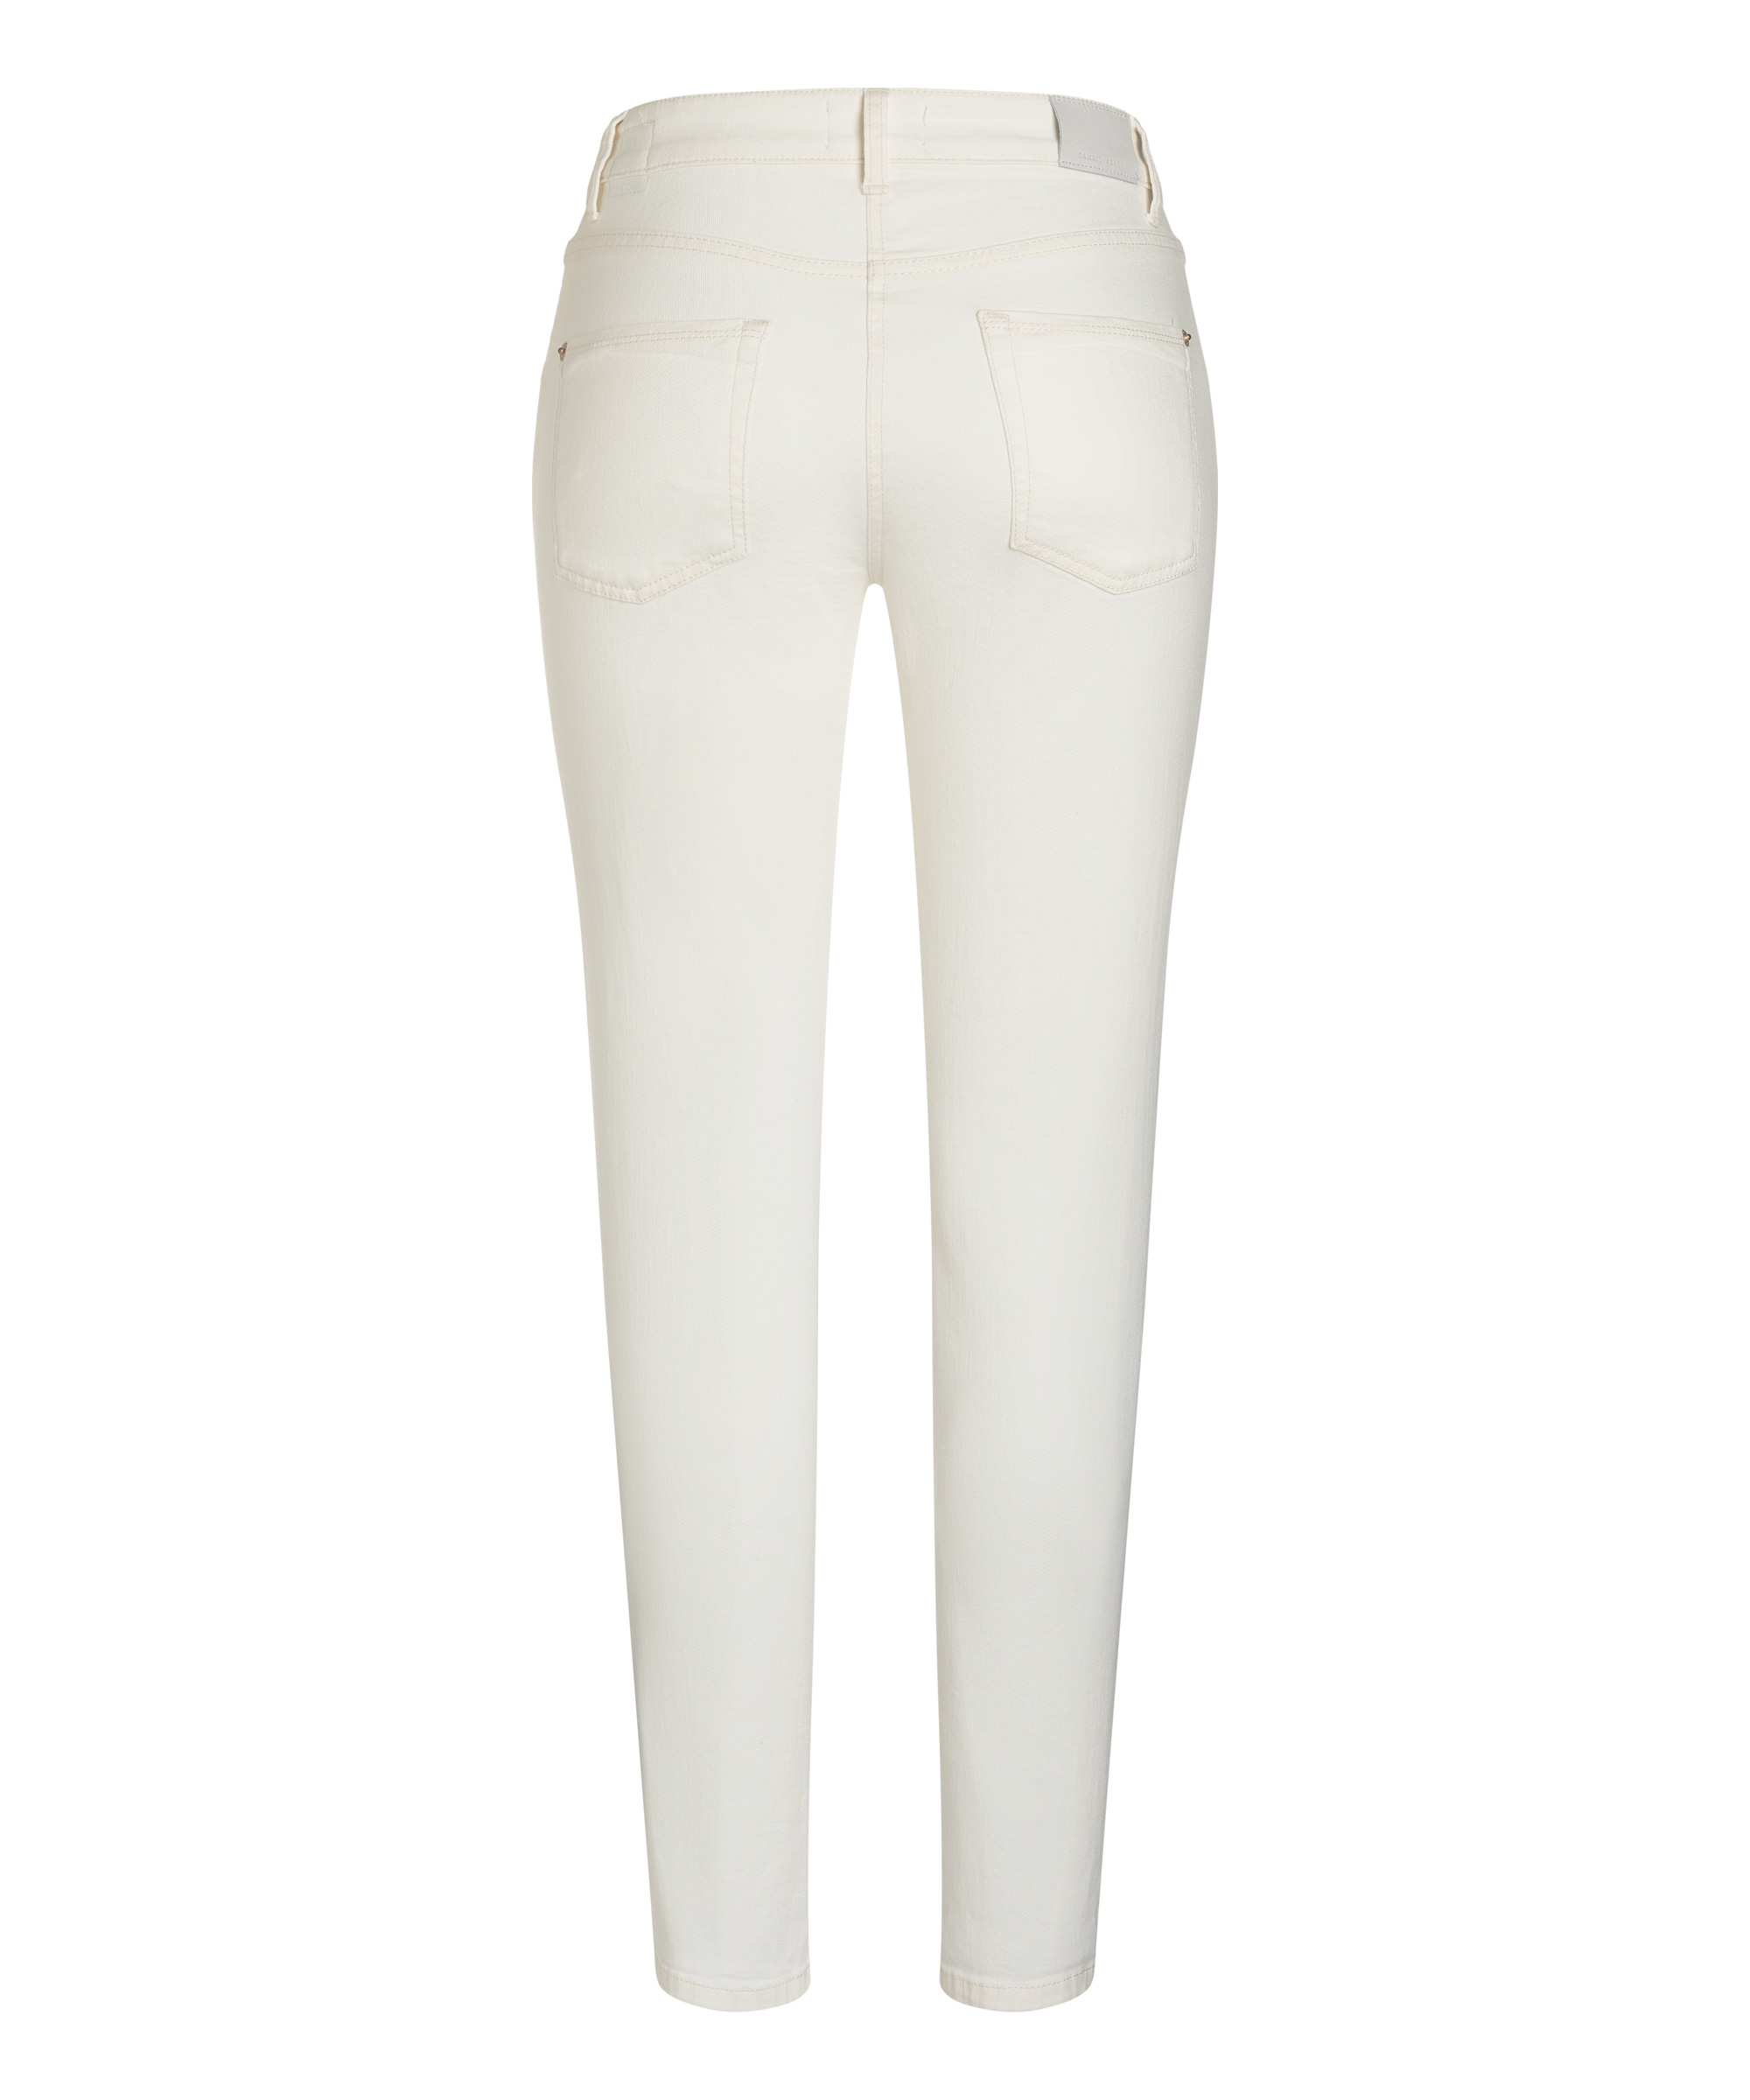 Cambio jeans Pina ECO PURE WHITE